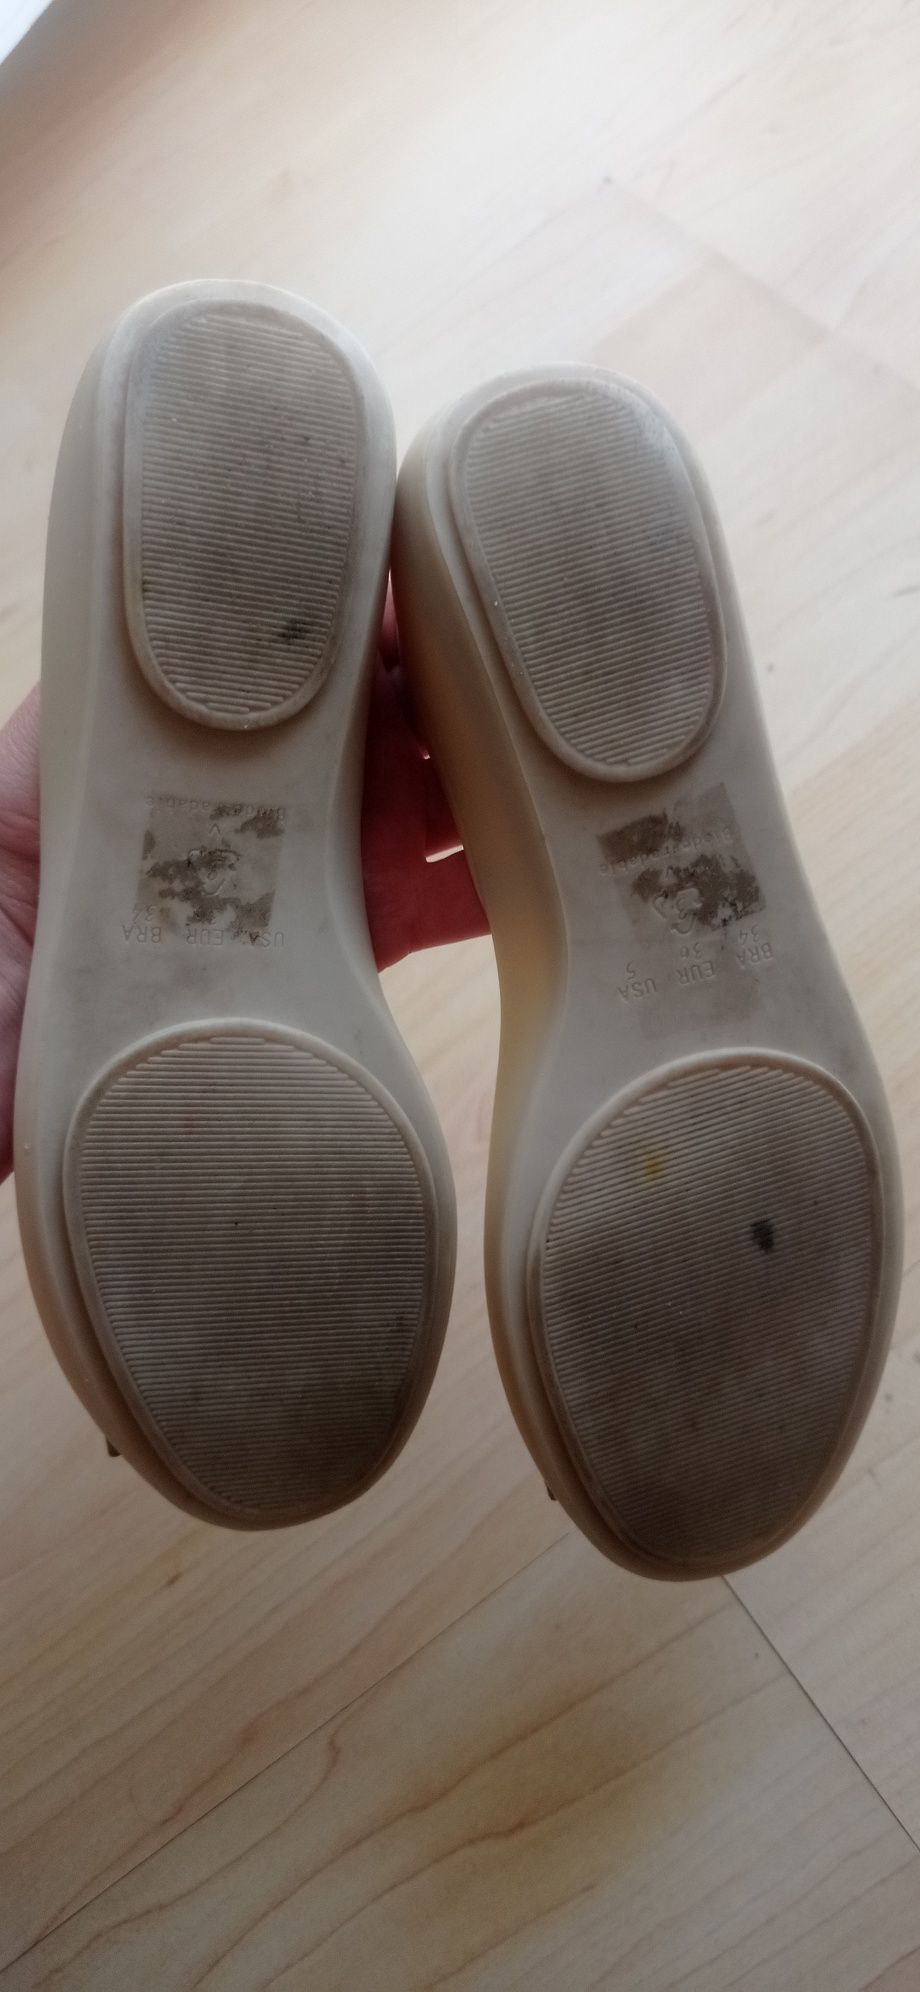 Buty damskie baletki meliski sandały botki skórzane Zestaw 4 sztuk 37